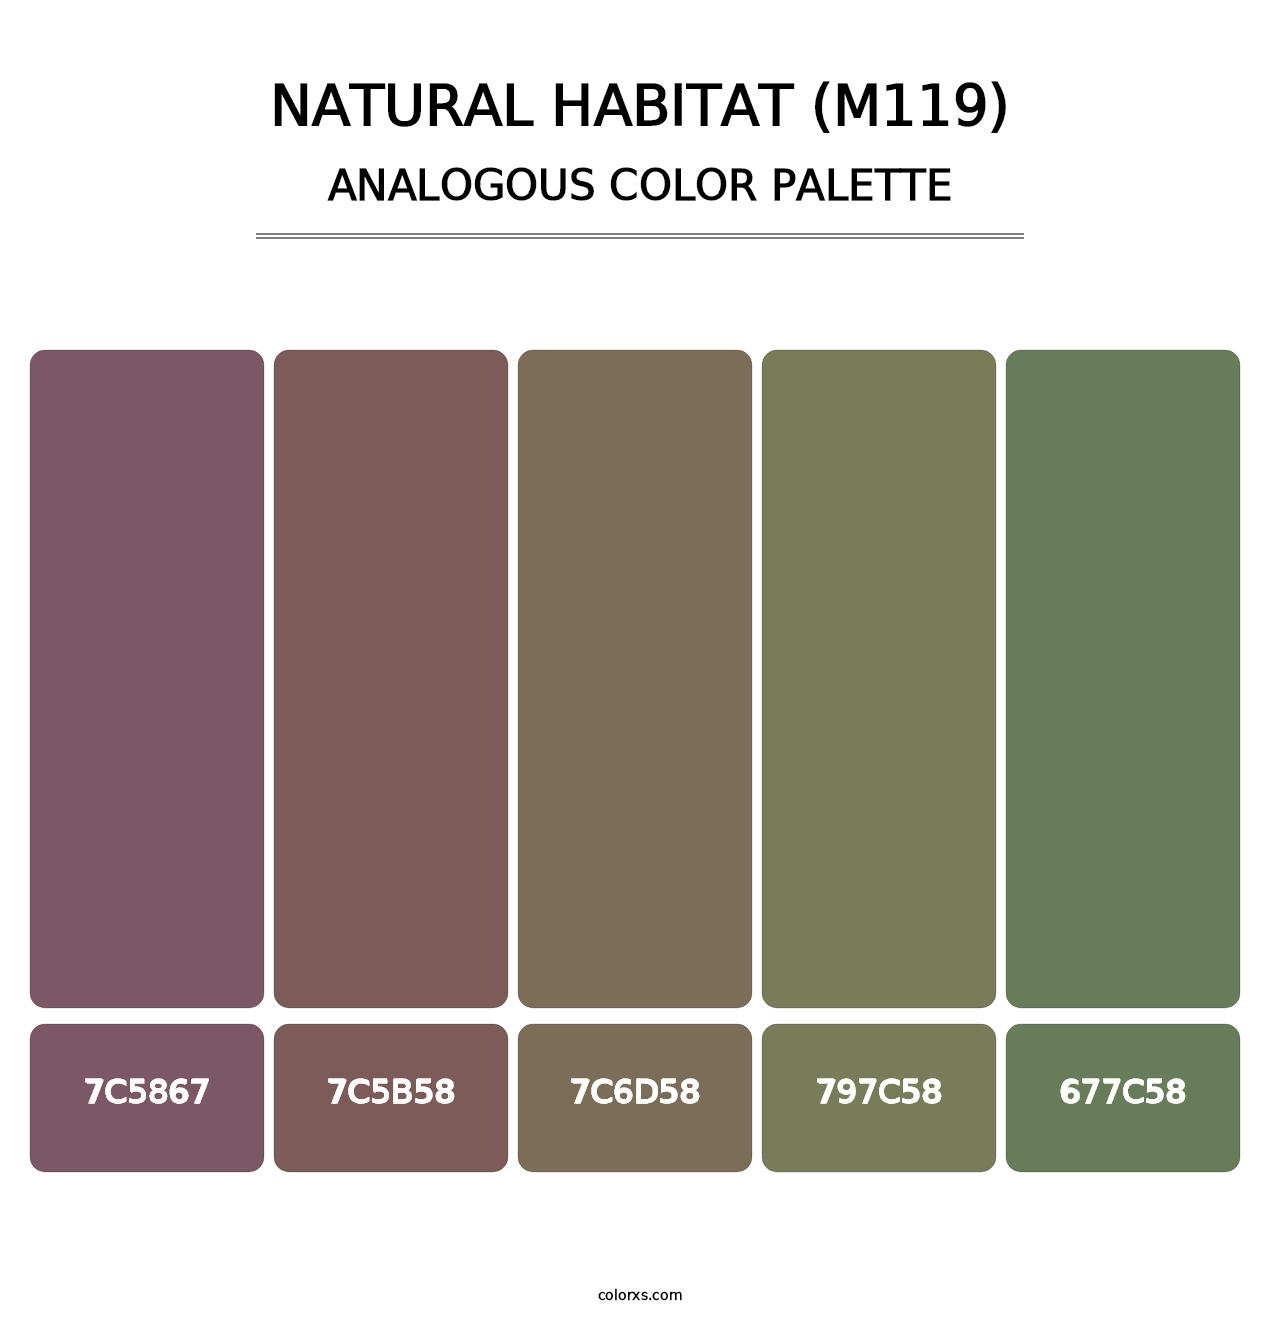 Natural Habitat (M119) - Analogous Color Palette